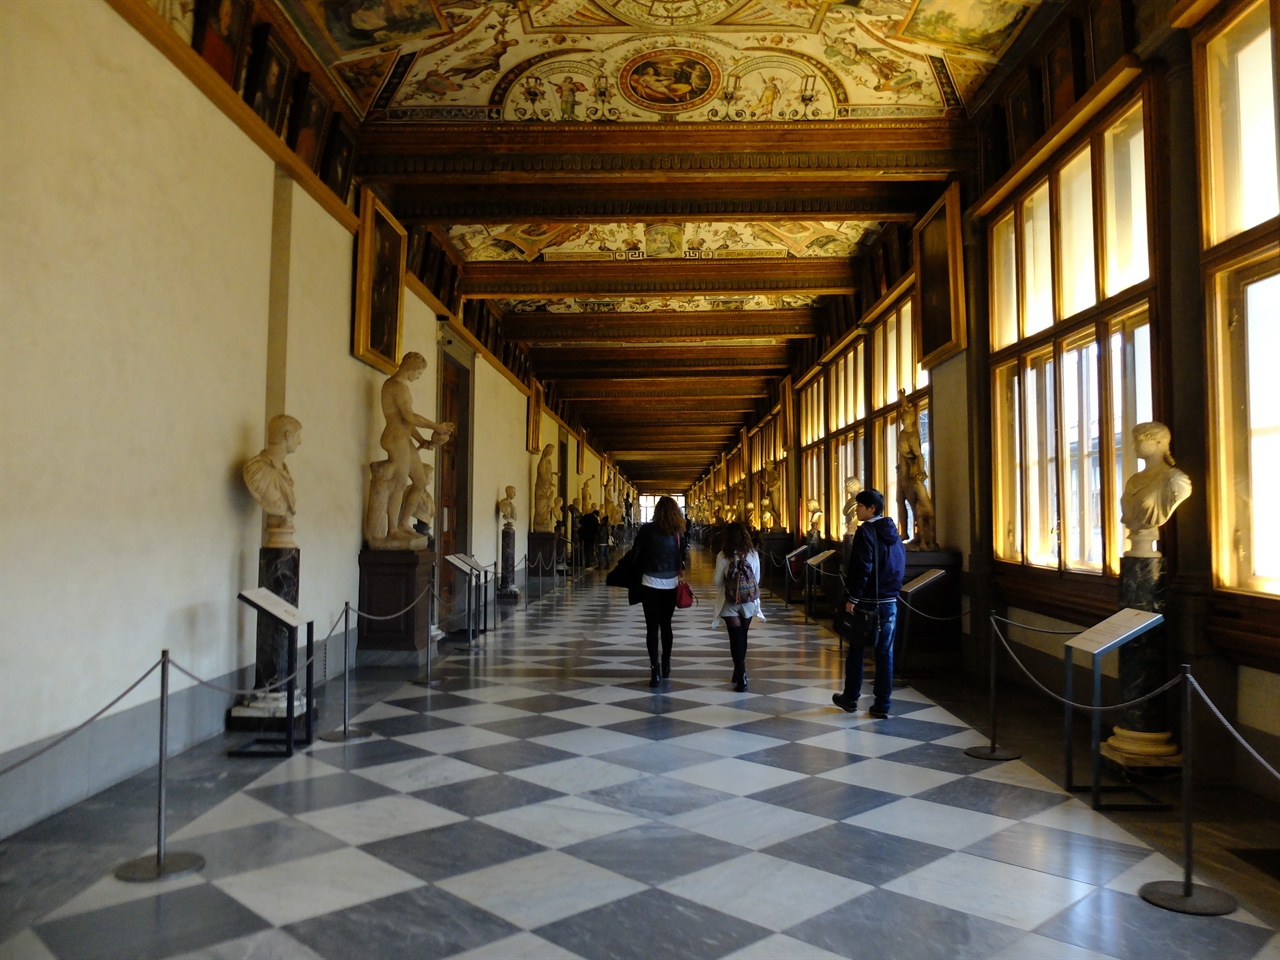 조르조 바사리가 설계한 '우피치 미술관'의 긴 복도는 아카데믹한 분위기를 자아냅니다. 